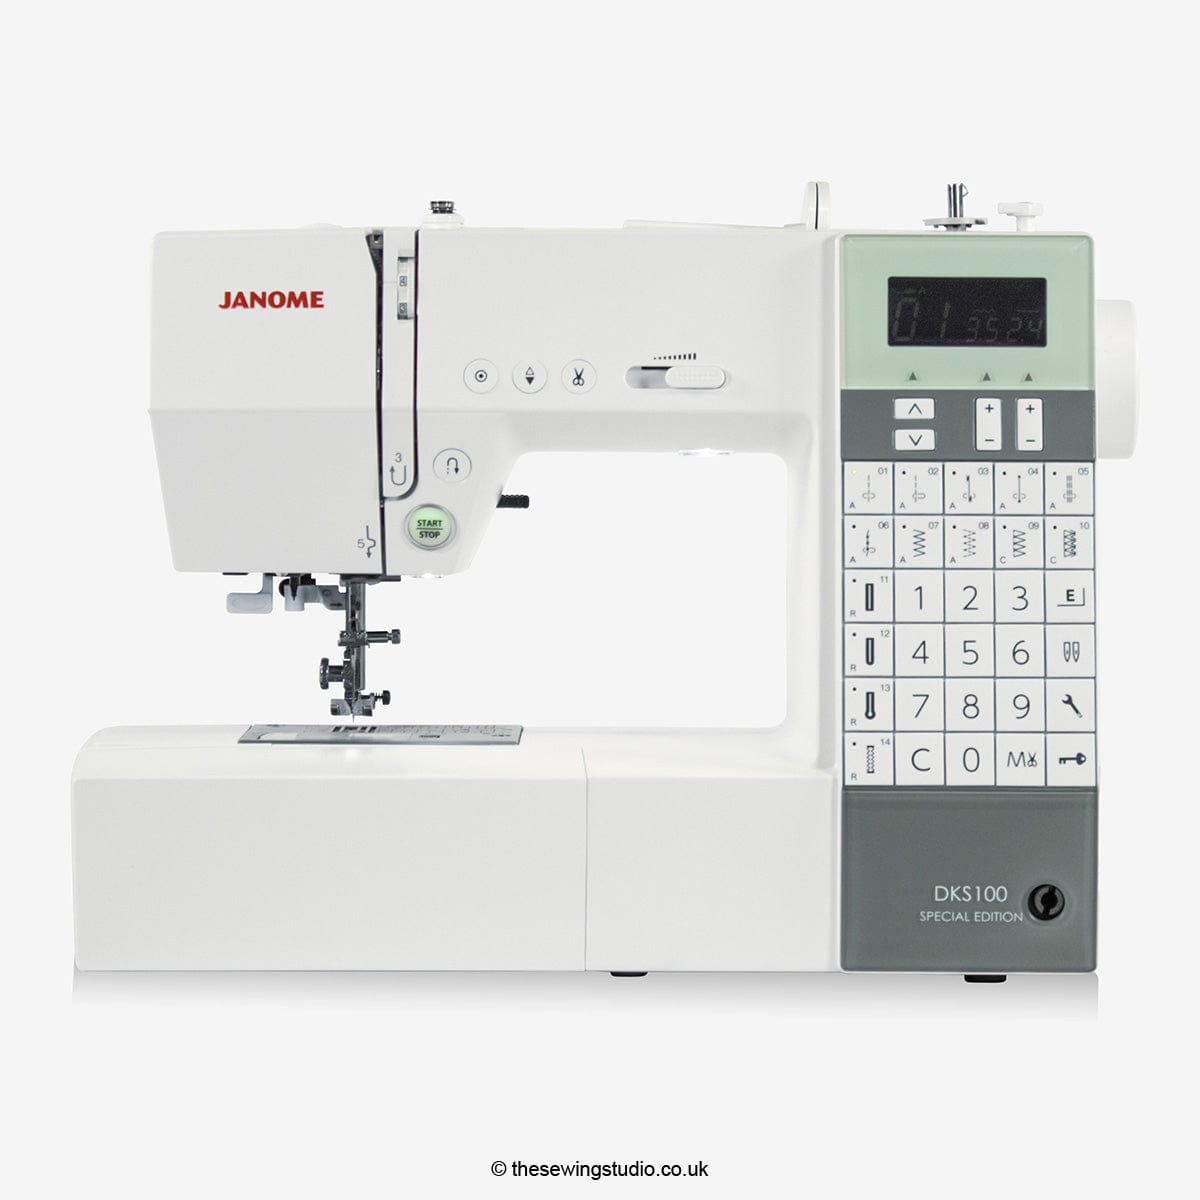 Janome DKS100 SE Sewing Machine